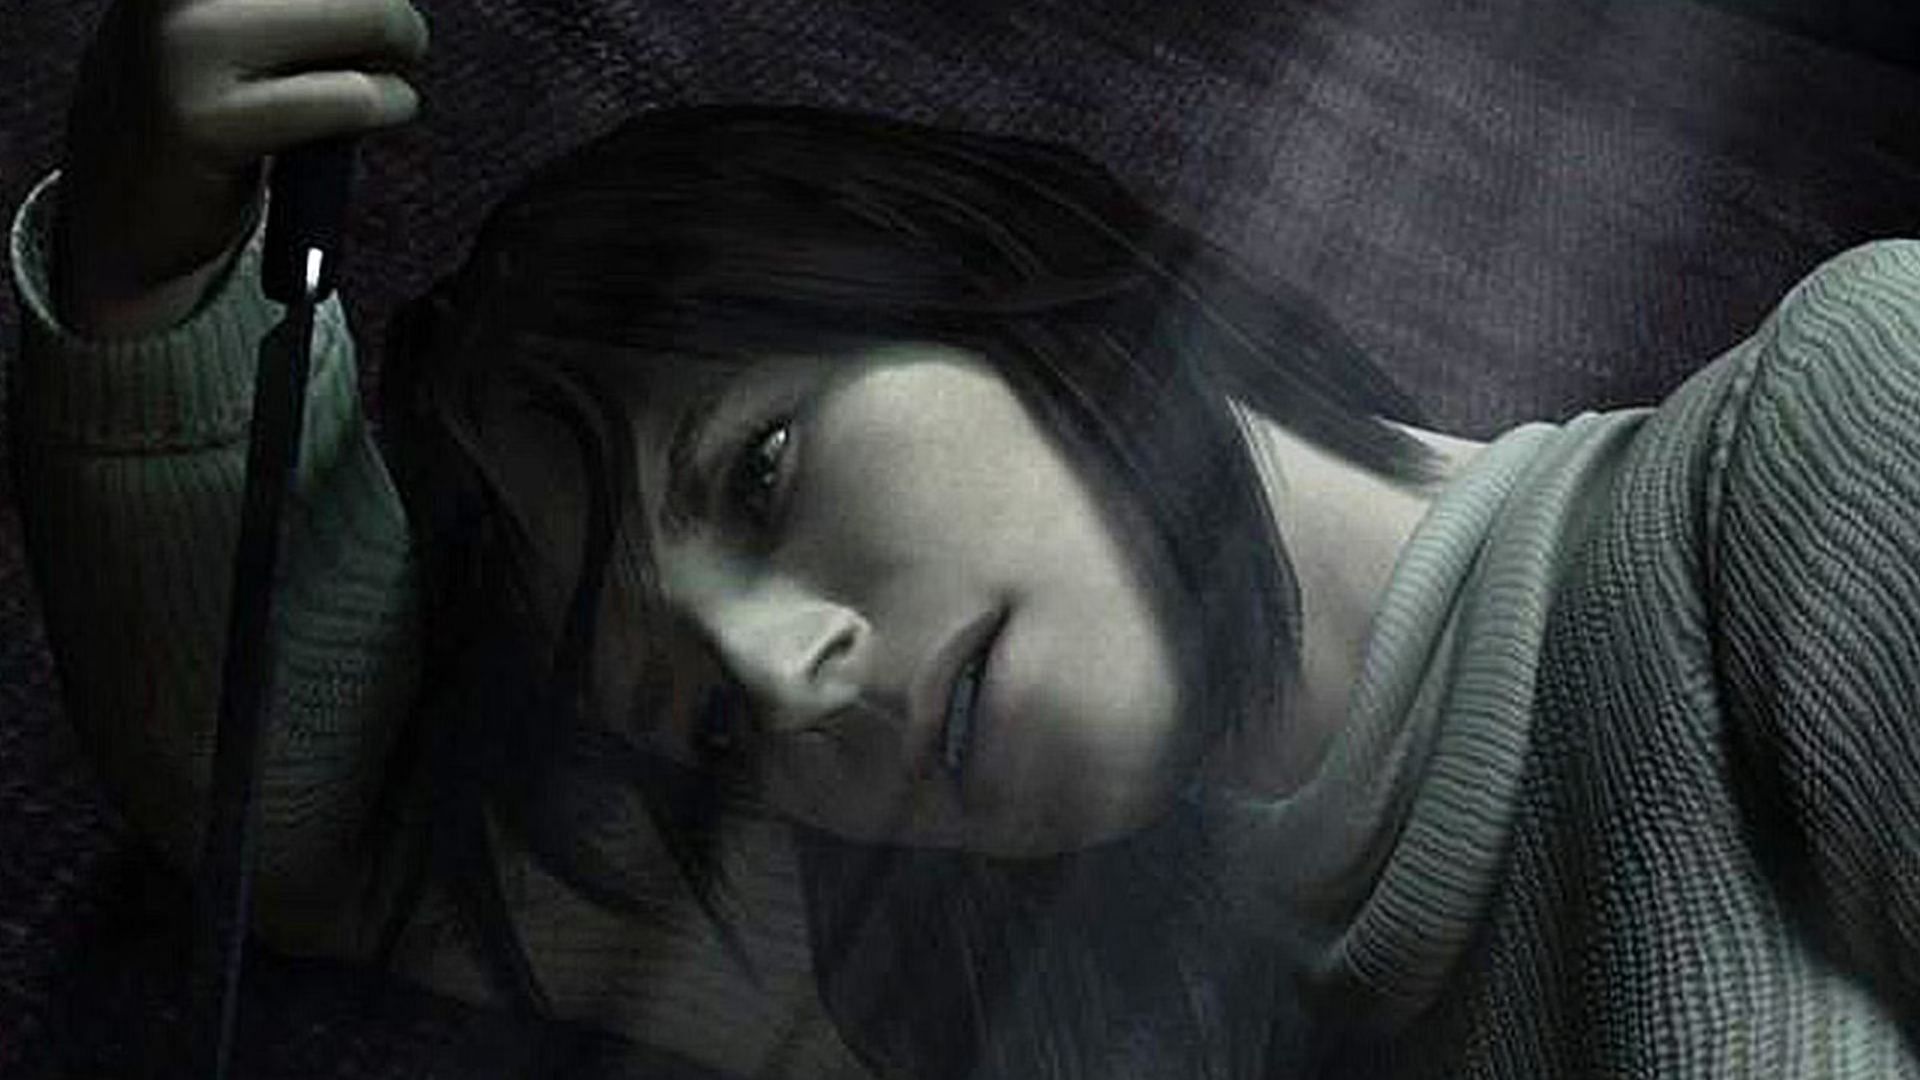 Silent Hill 2 is a blockbuster psychological horror game. (Image via Konami)